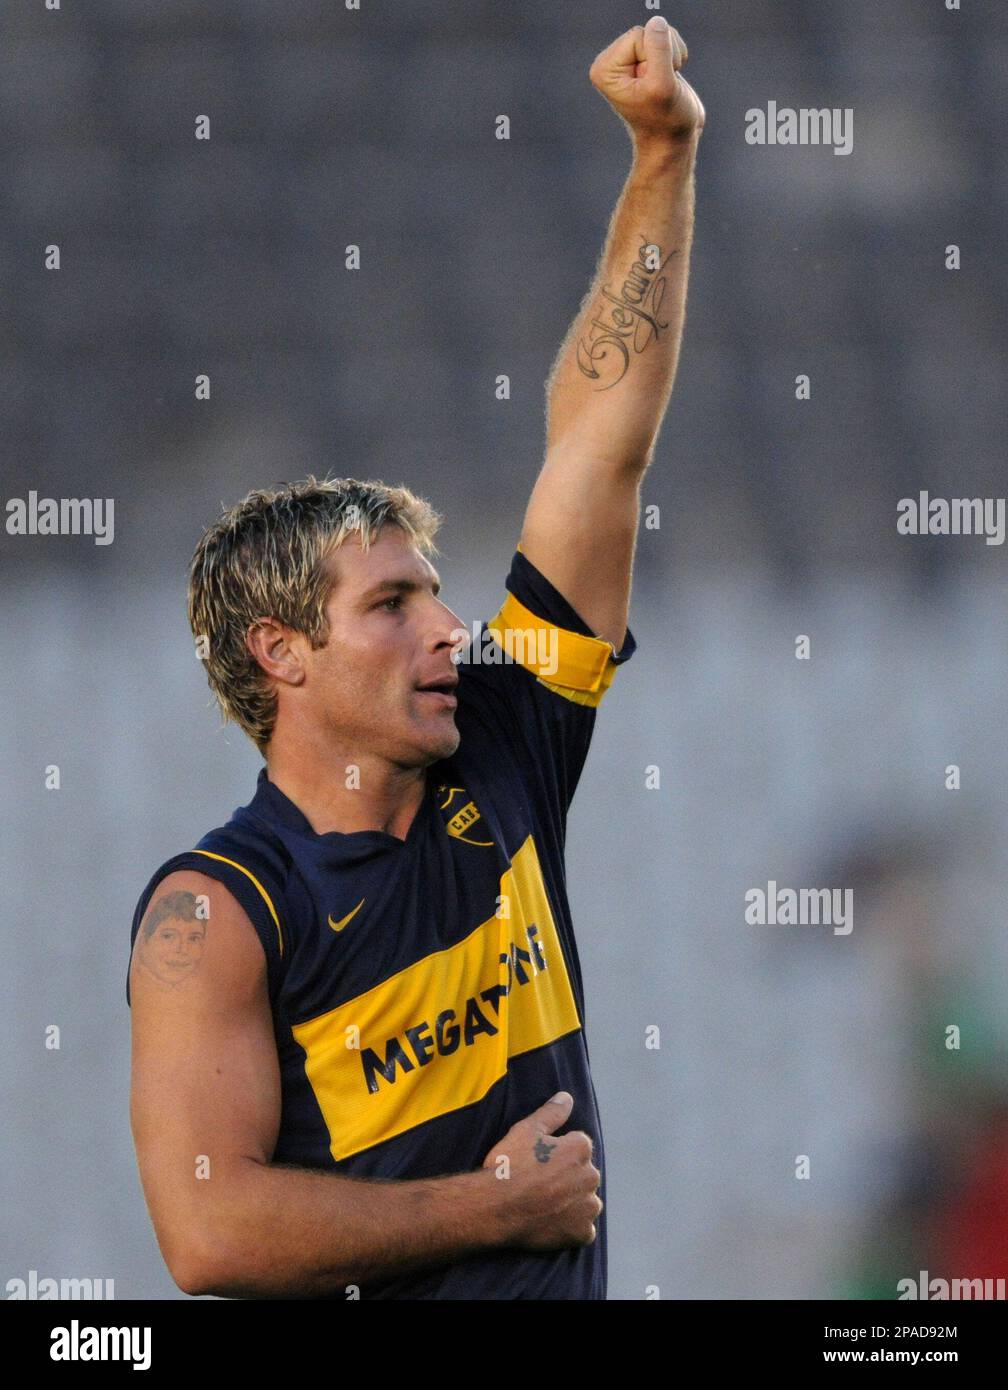 Martin Palermo - Boca Juniors, Player Profile